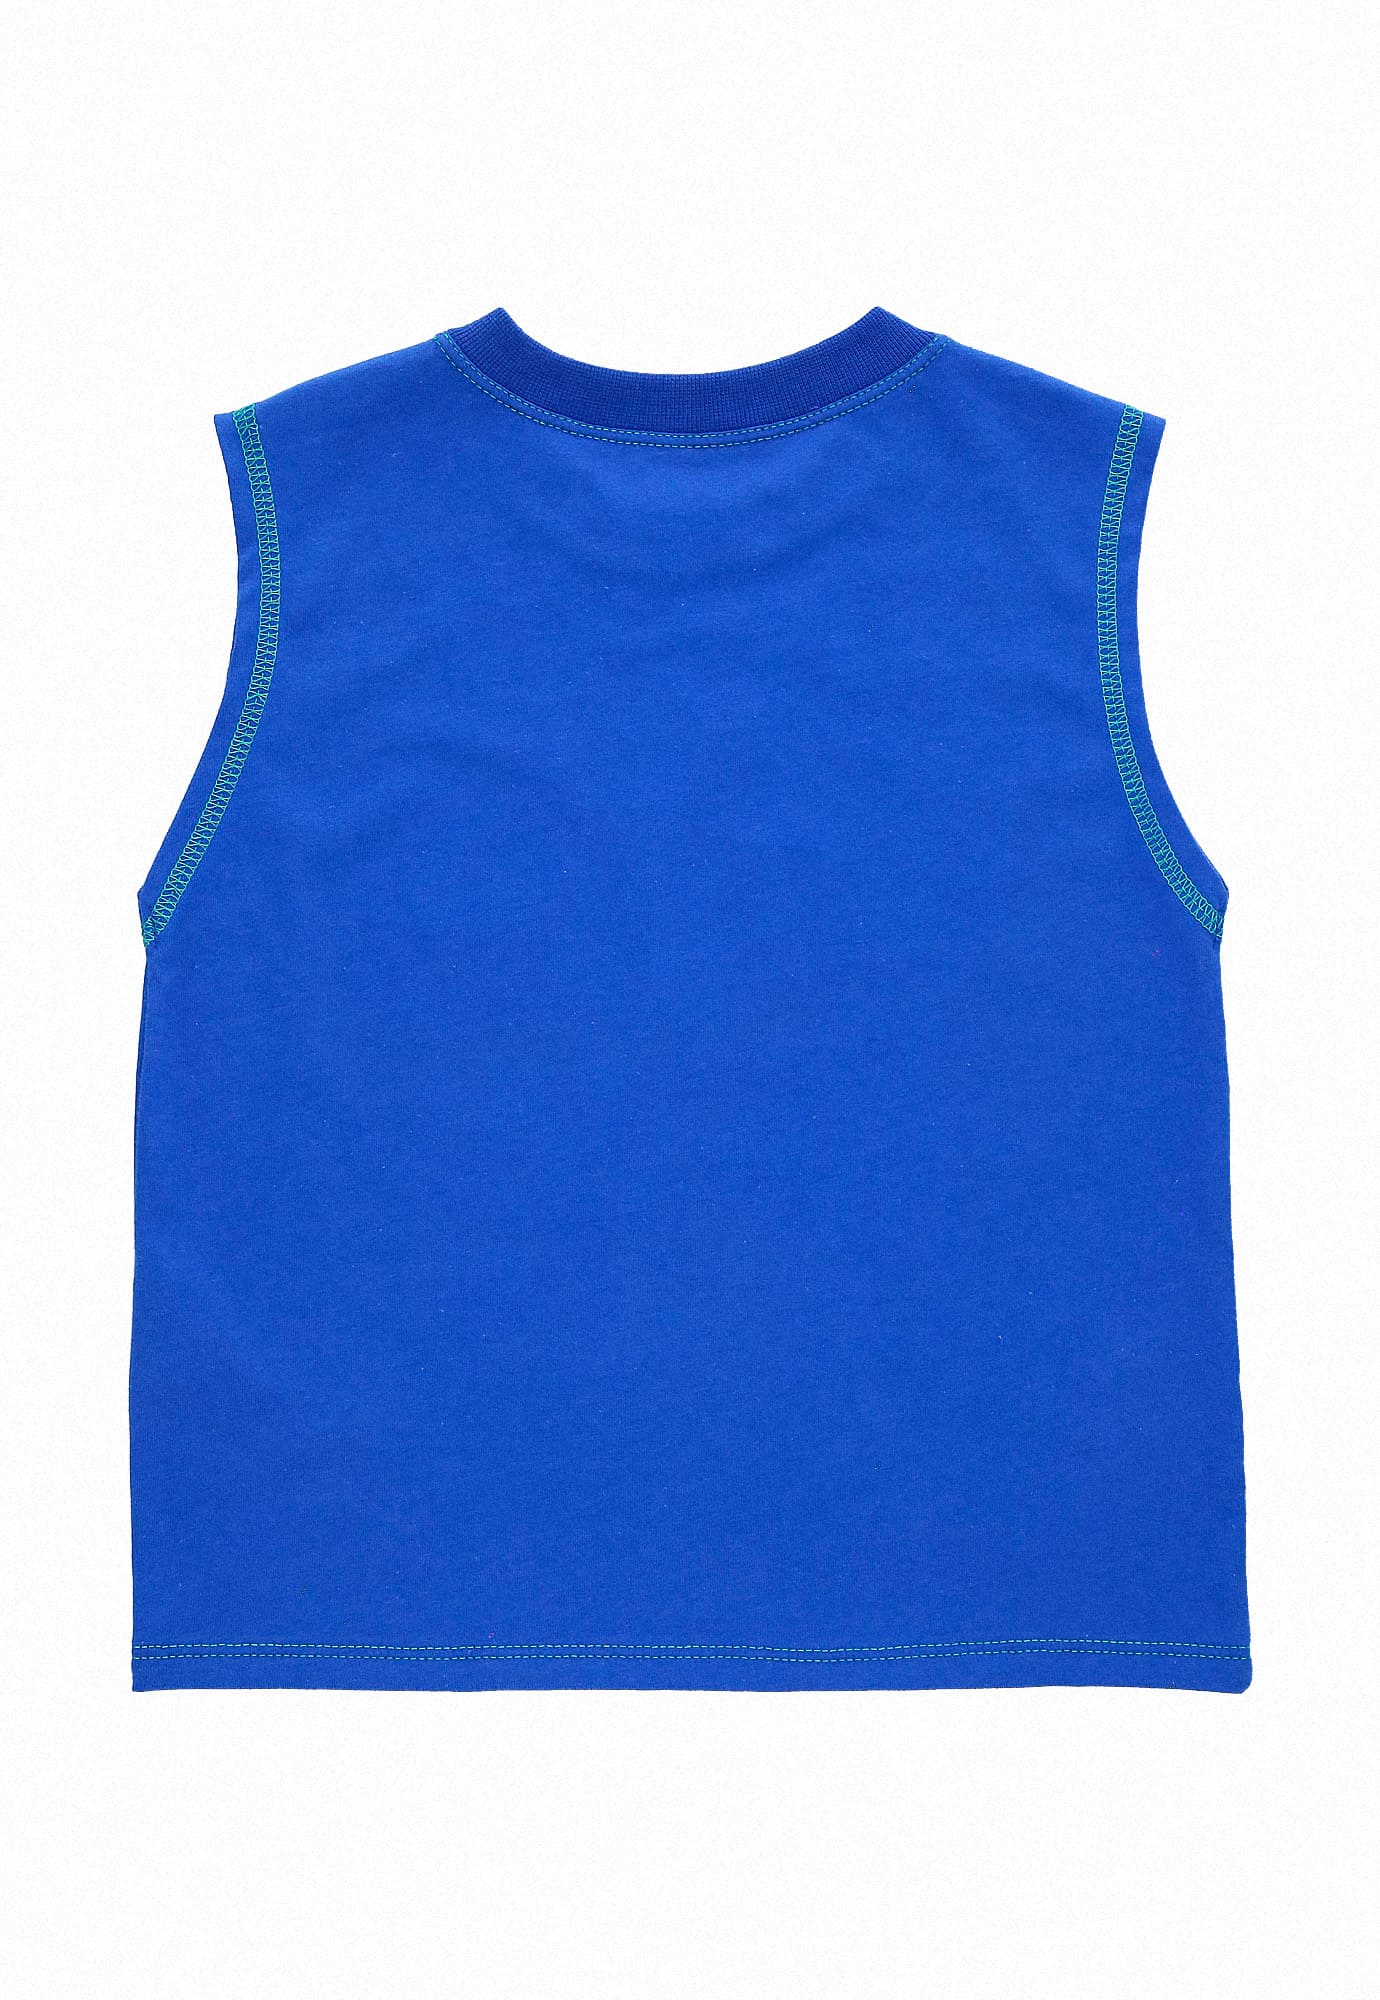 Camiseta azul rey manga sisa, con estampado frontal y bolsillo para bebé niño